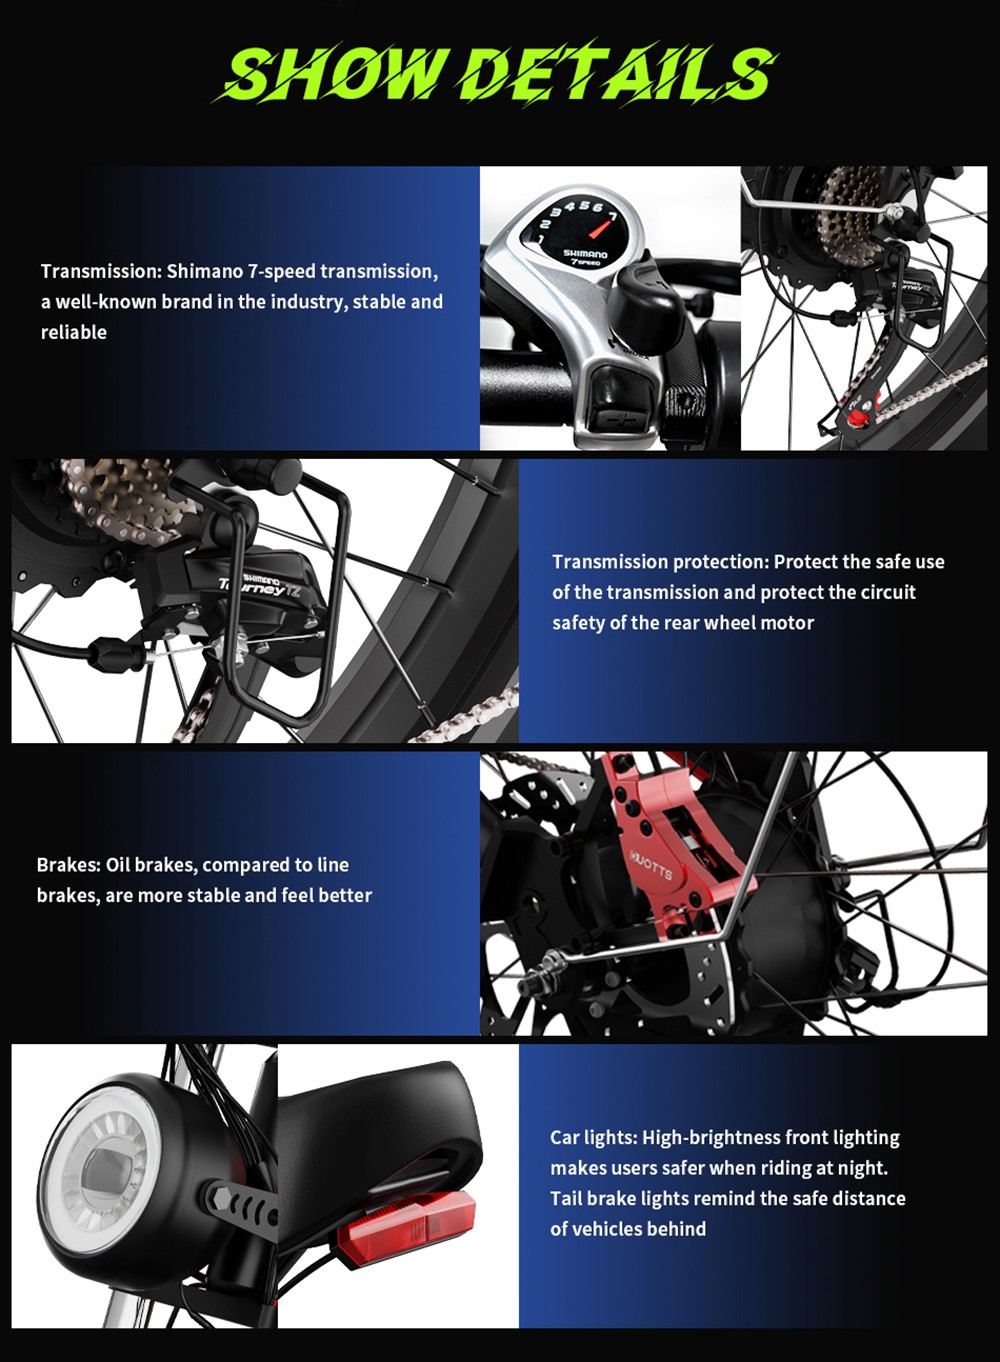 Vélo électrique DUOTTS N26, moteurs 750W*2, vitesse maximale de 55 km/h, 26*4.0